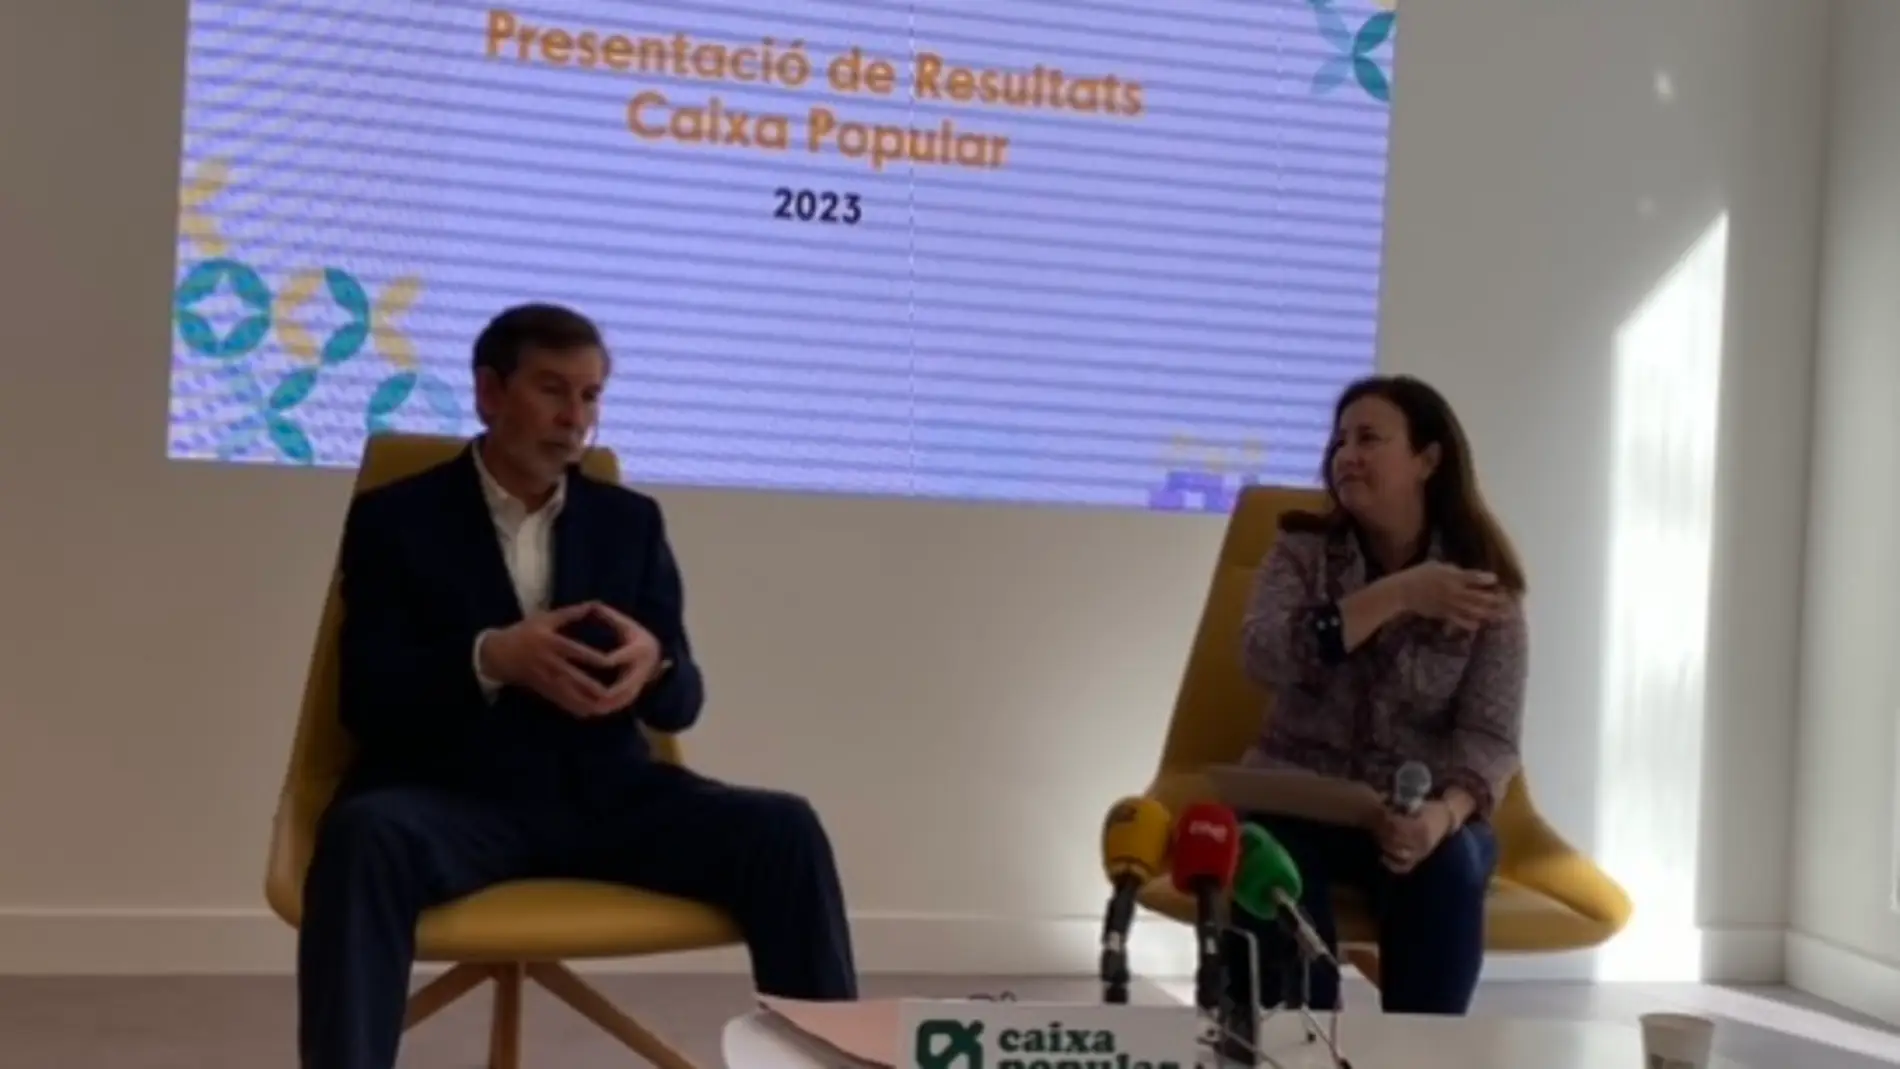 El director general de Caixa Popular, Rosendo Ortí, durante la presentación de resultados